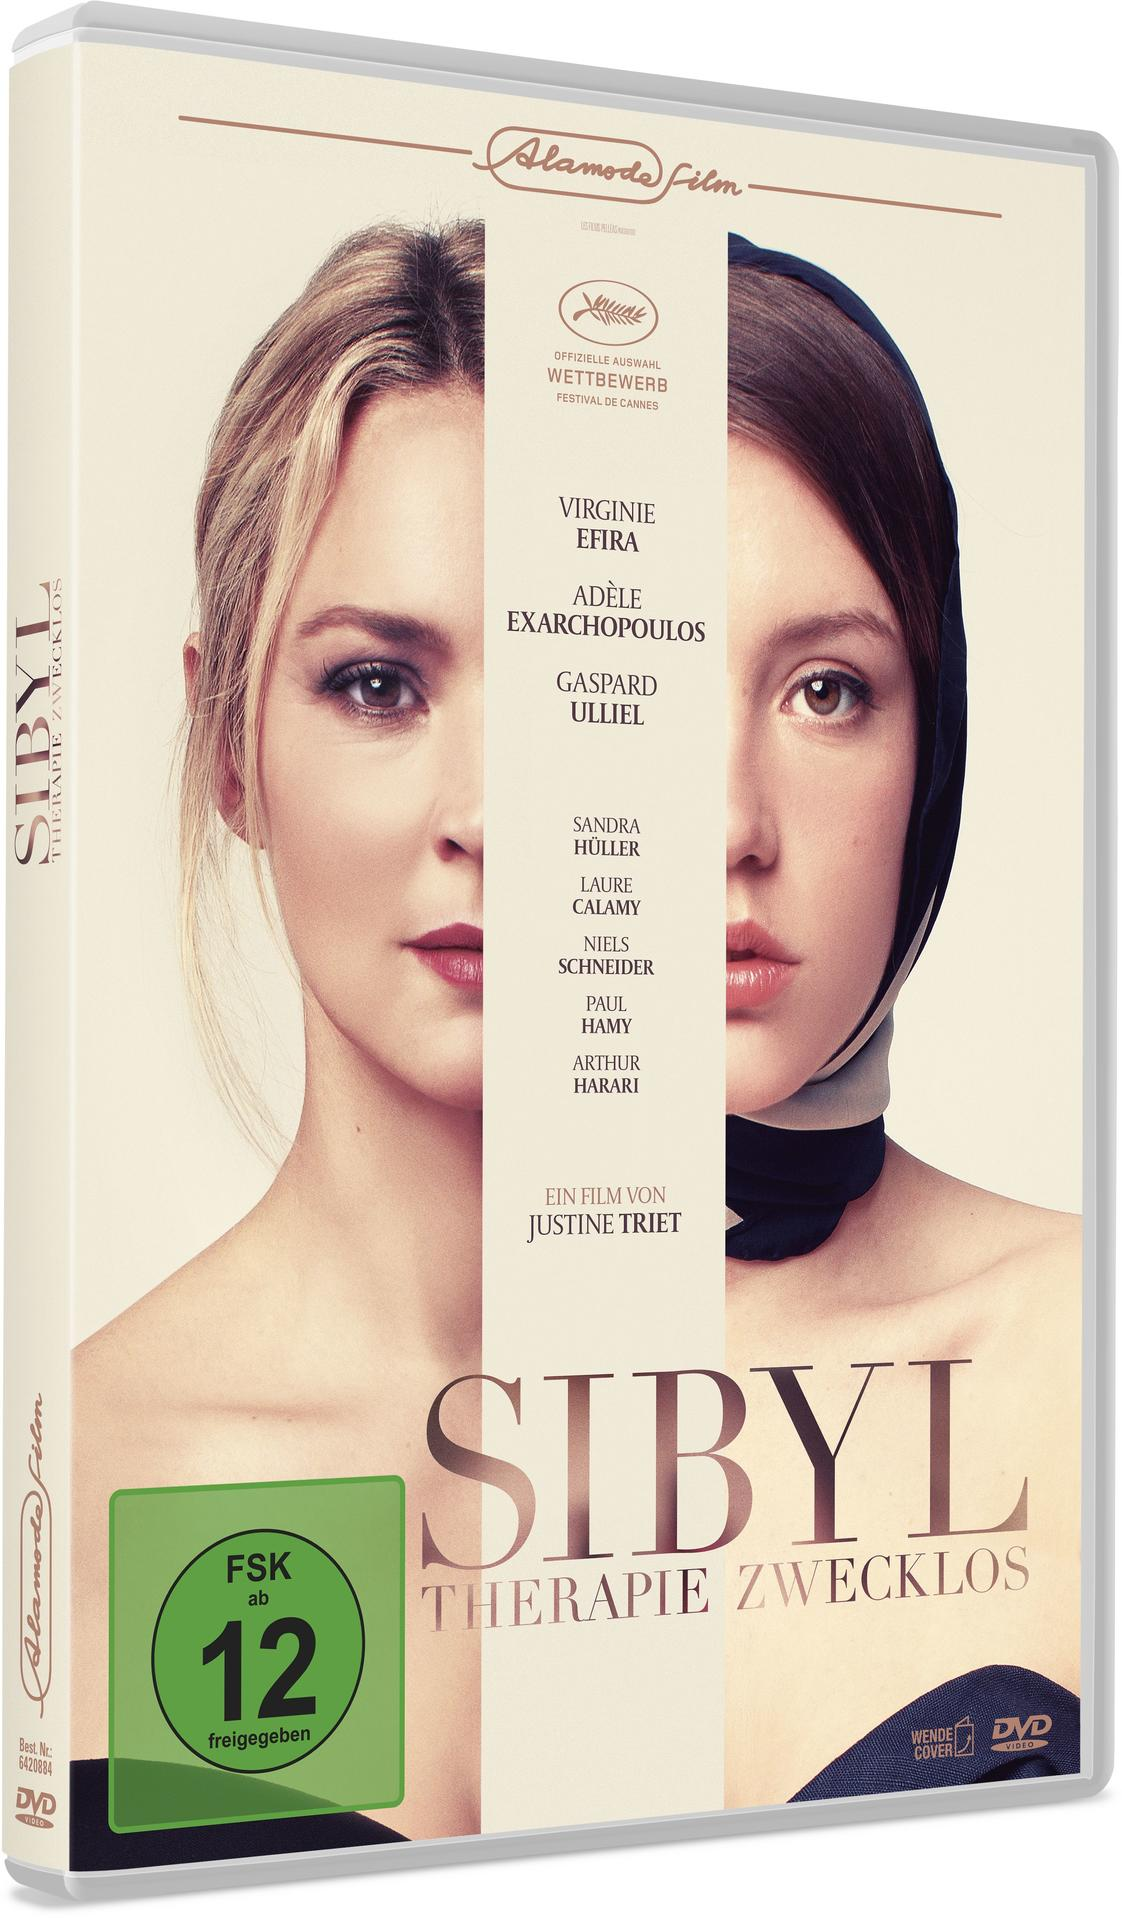 DVD ZWECKLOS SIBYL-THERAPIE